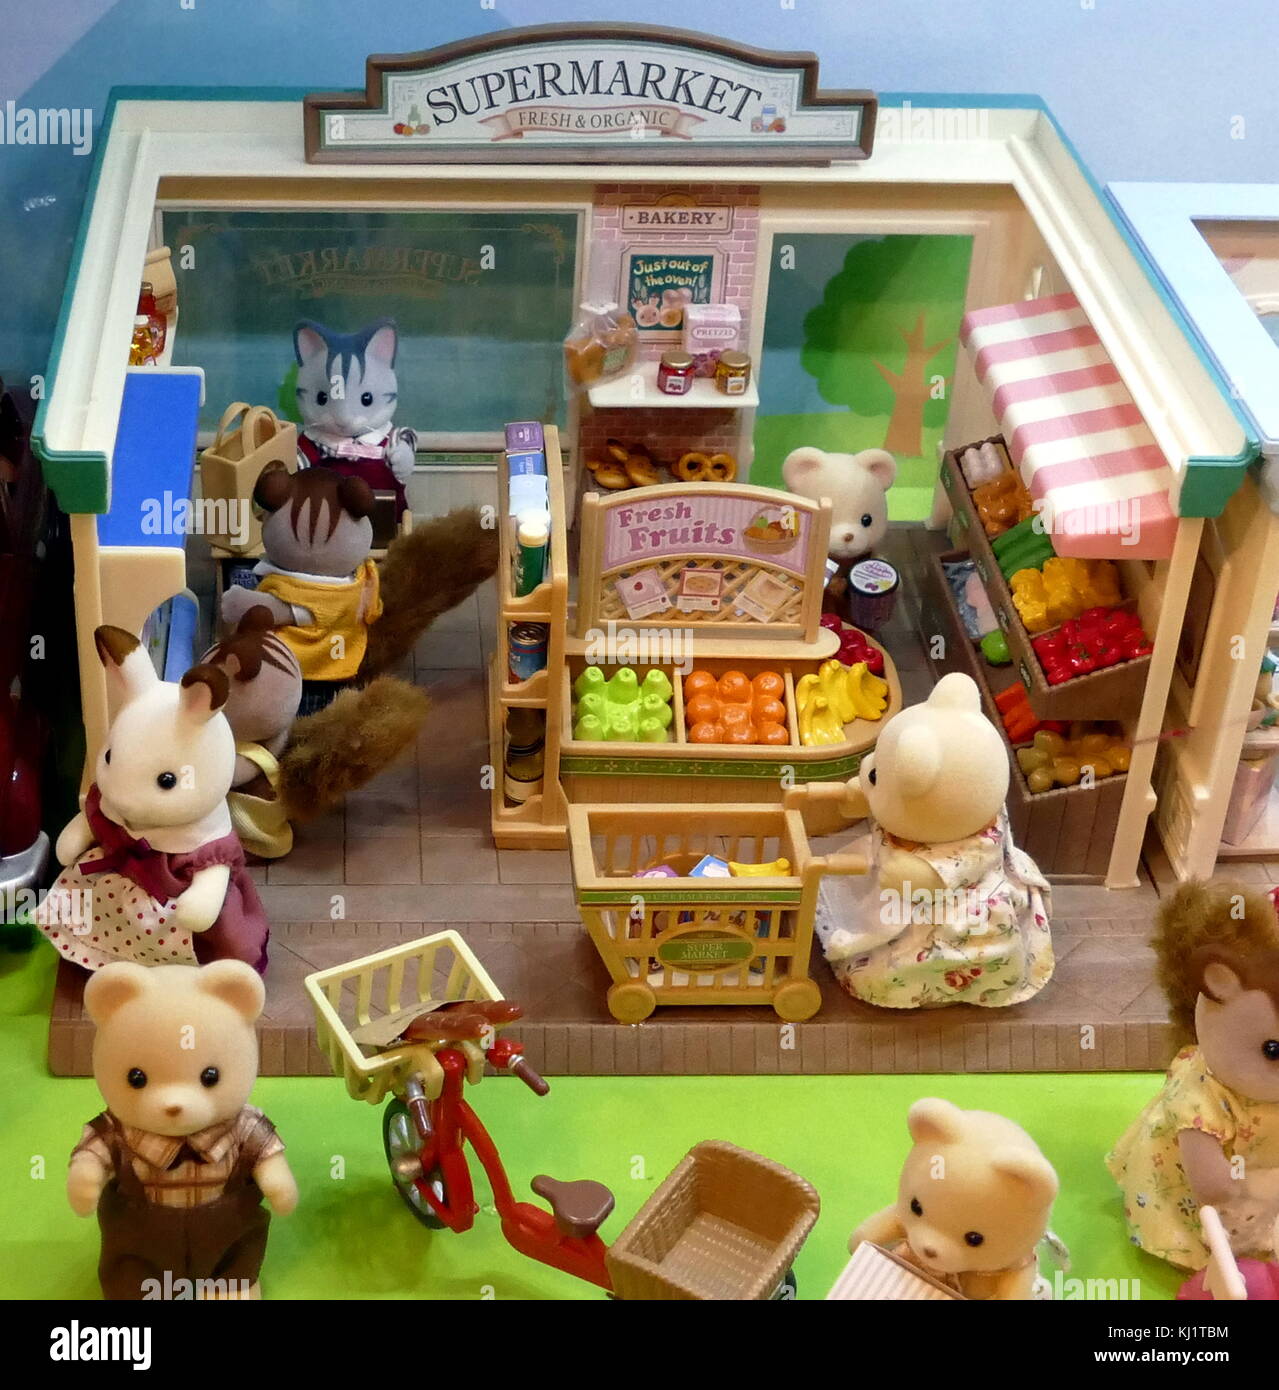 Famiglia di Sylvania bambole case e negozi basati sulle famiglie di Sylvania è una linea di oggetti collezionabili antropomorfi figurines animali realizzati in plastica floccata. creato da il gioco giapponese di epoca della società nel 1985 e distribuite in tutto il mondo da un certo numero di aziende. Foto Stock